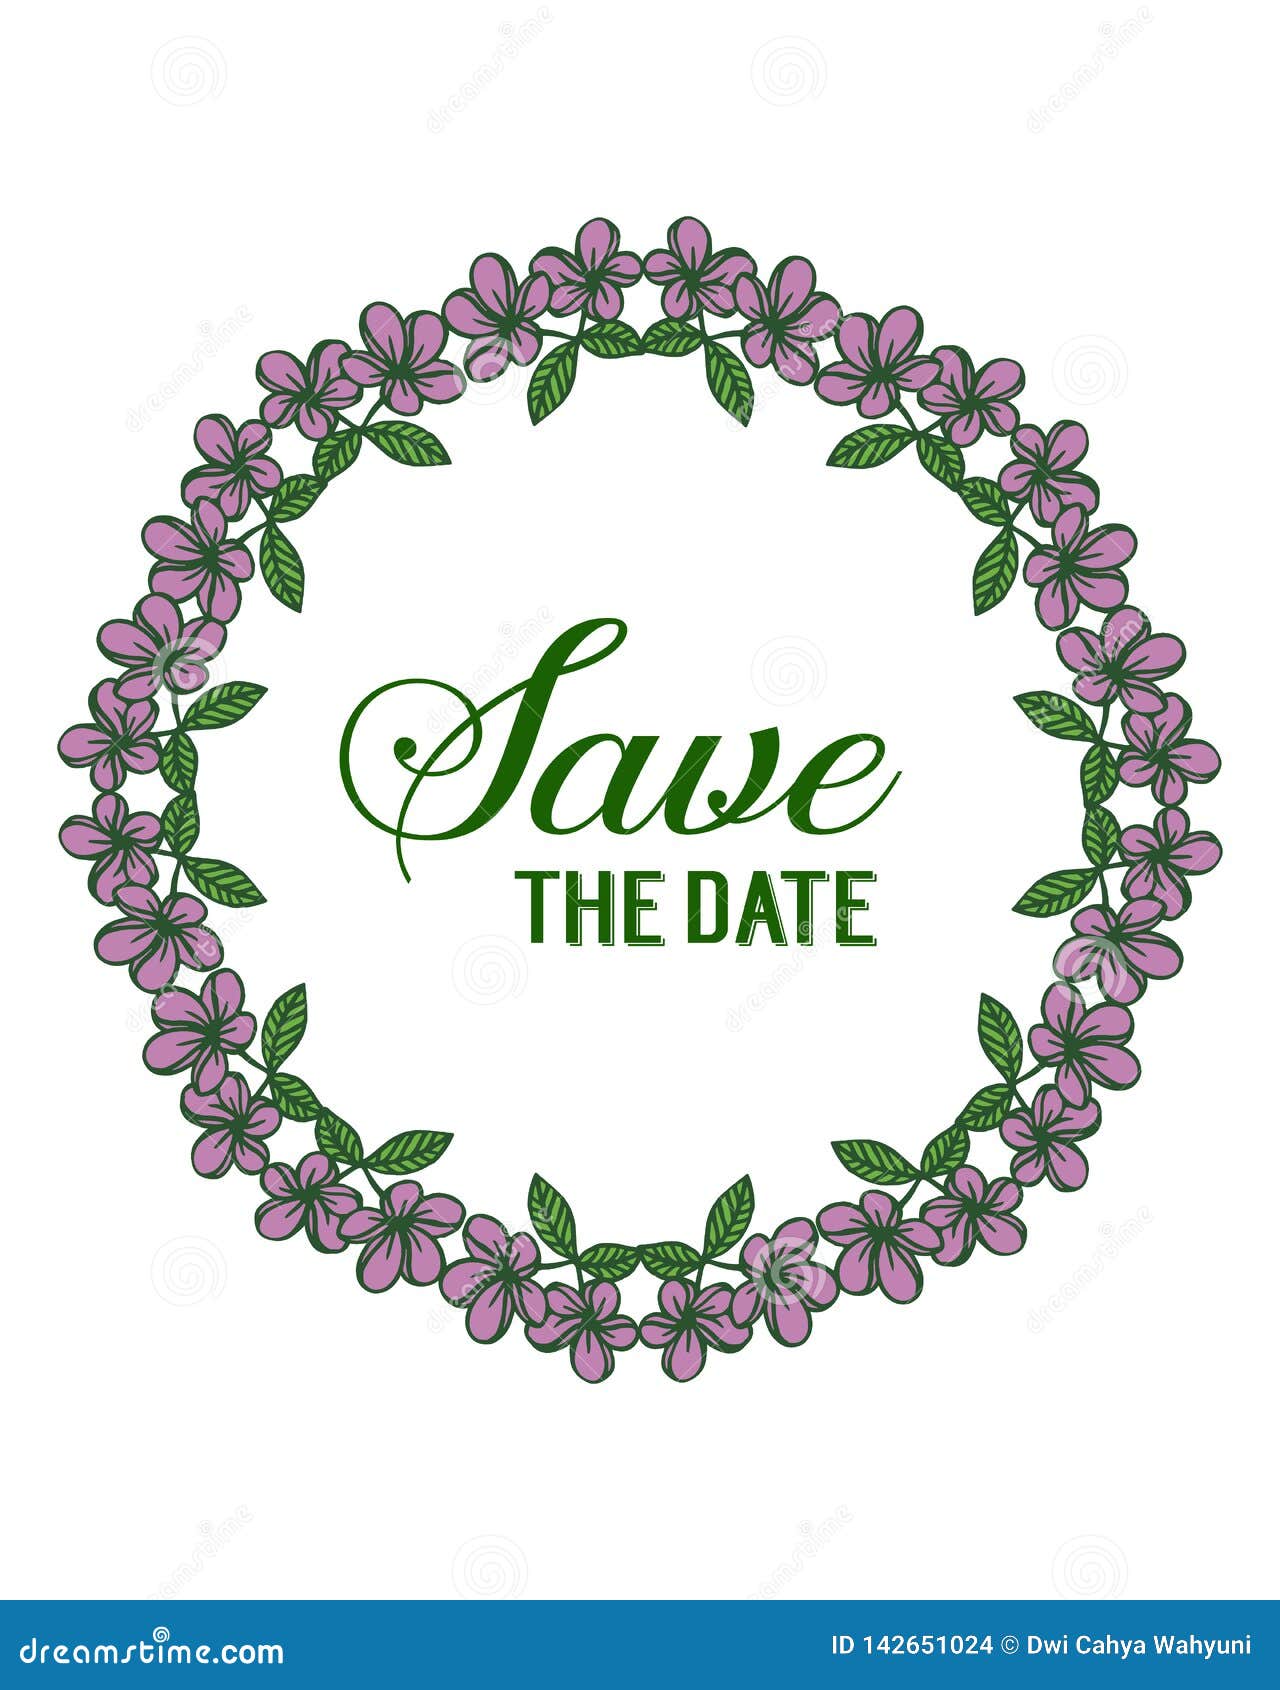 Vector Illustration Purple Rose Flower Frame with Design Wedding Save ...